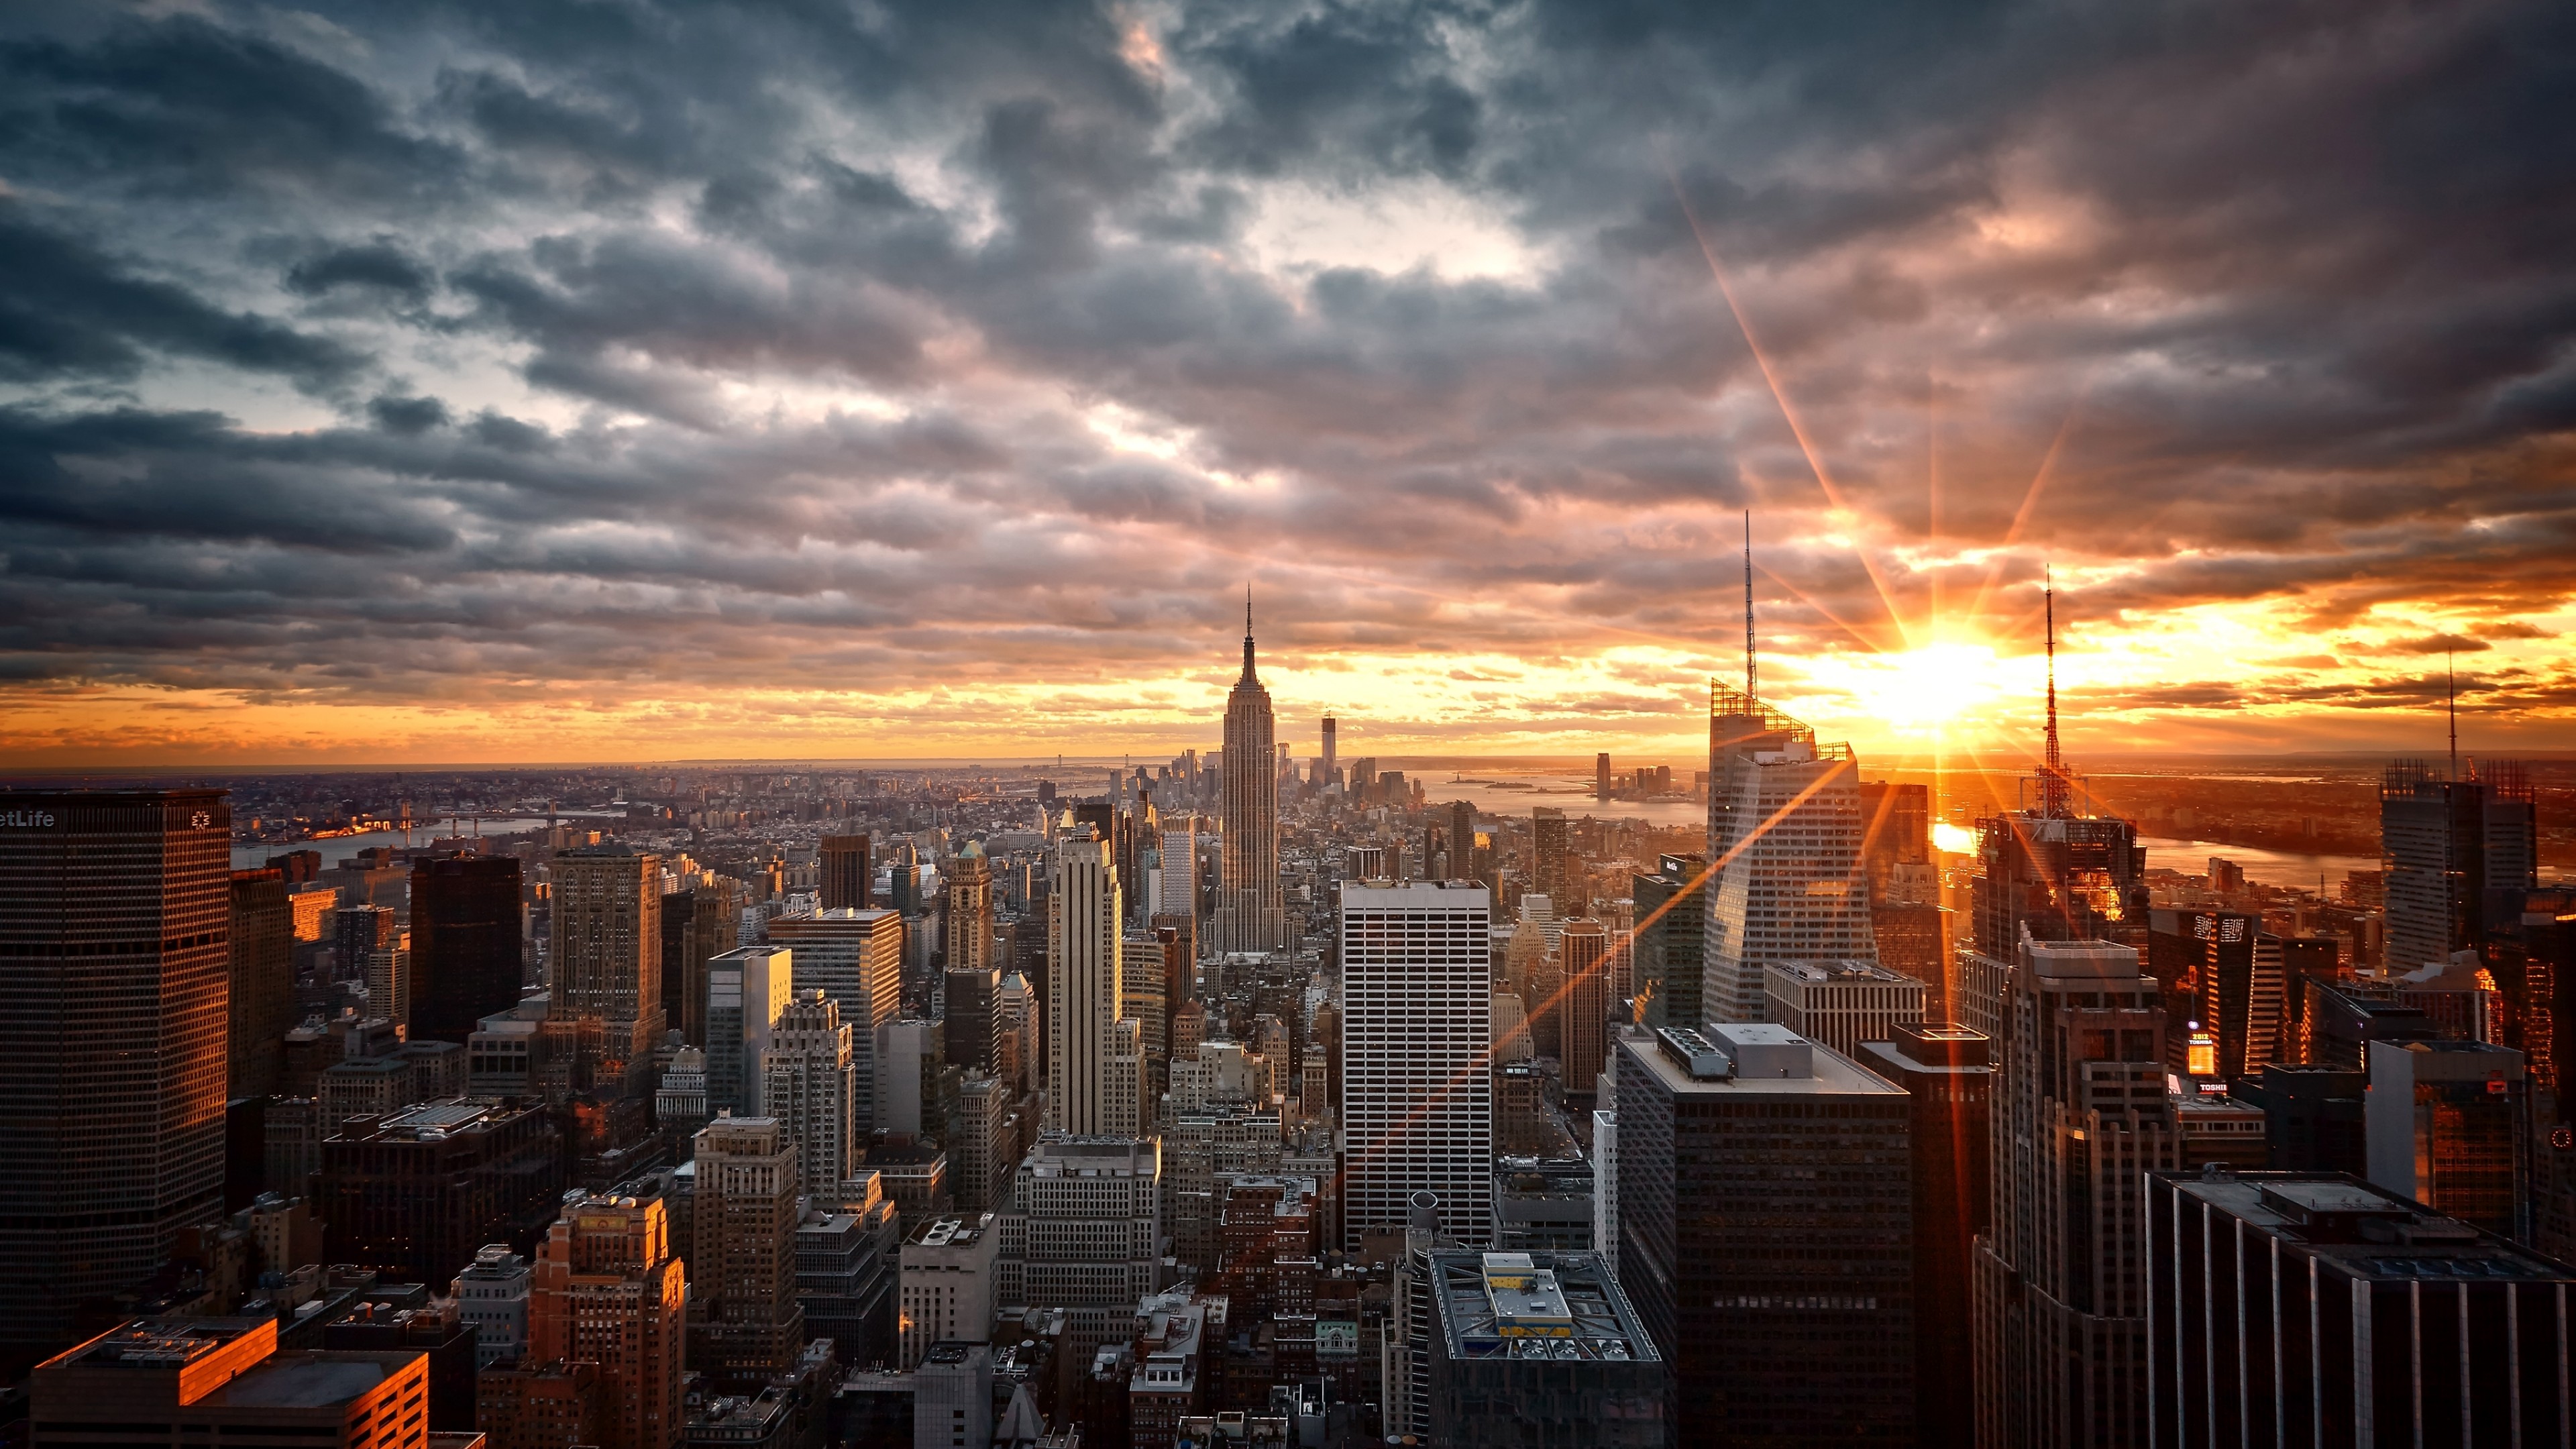 Thành phố New York là một điểm đến thú vị và sôi động. Hãy xem hình ảnh để khám phá những tòa nhà chọc trời đặc trưng của thành phố này.